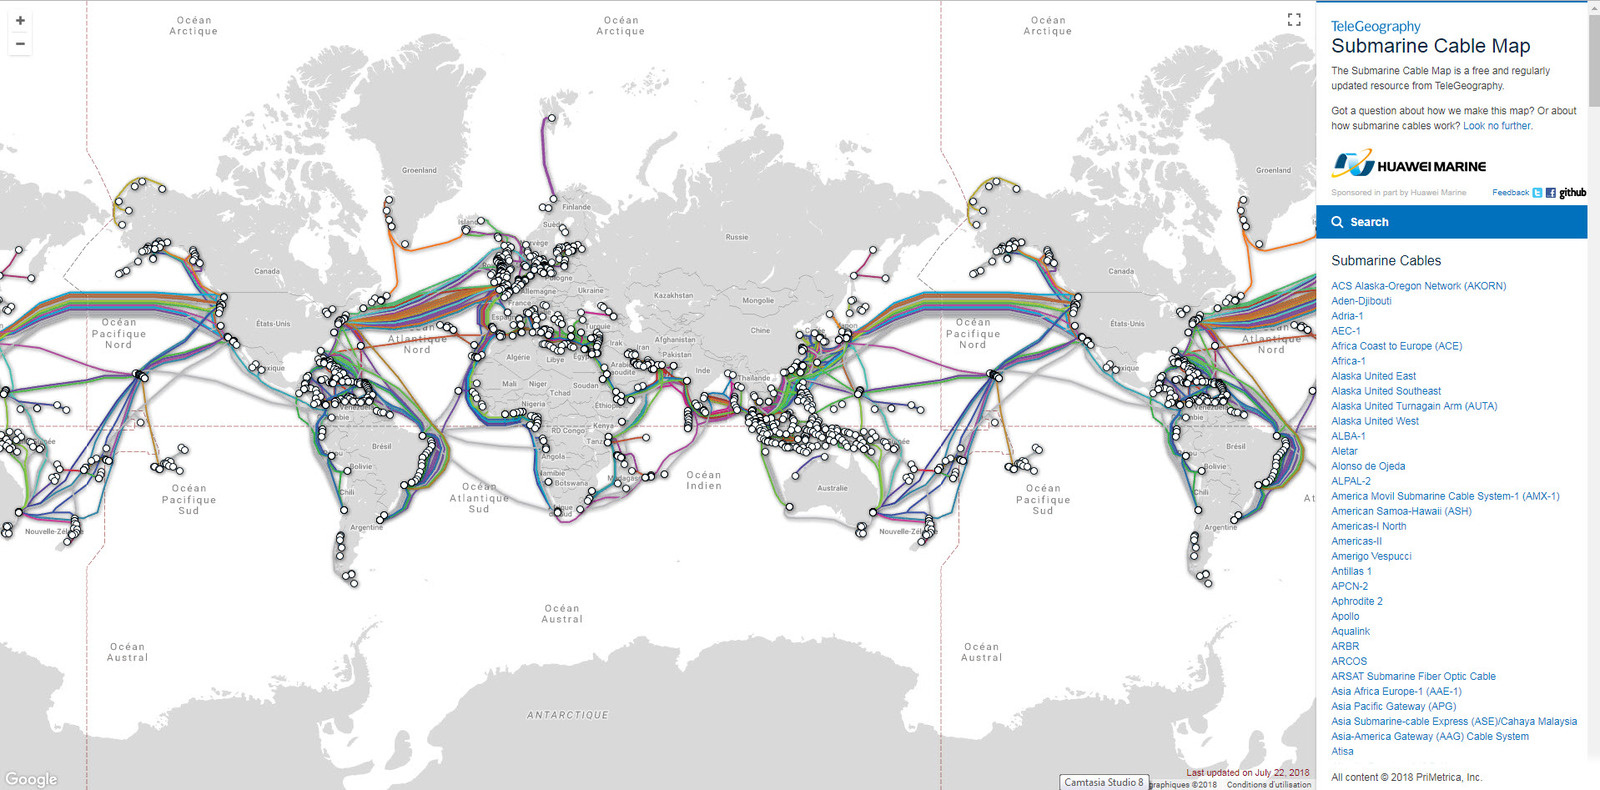 https://www.eurafibre.fr/la-carte-mondiale-des-cables-de-telecommunications-sous-marins/